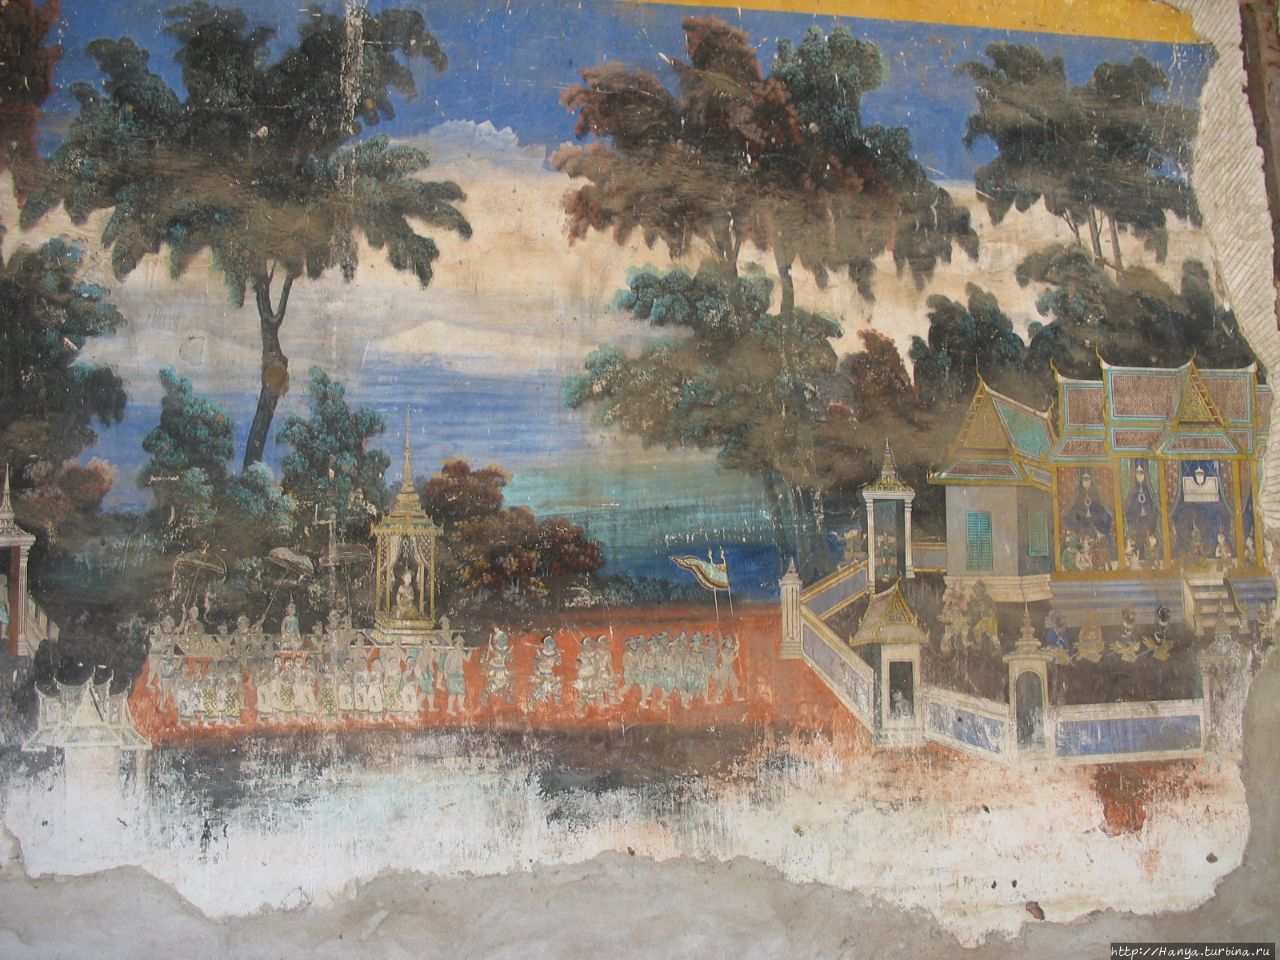 Настенные фрески в комплексе Серебряная Пагода Пномпень, Камбоджа